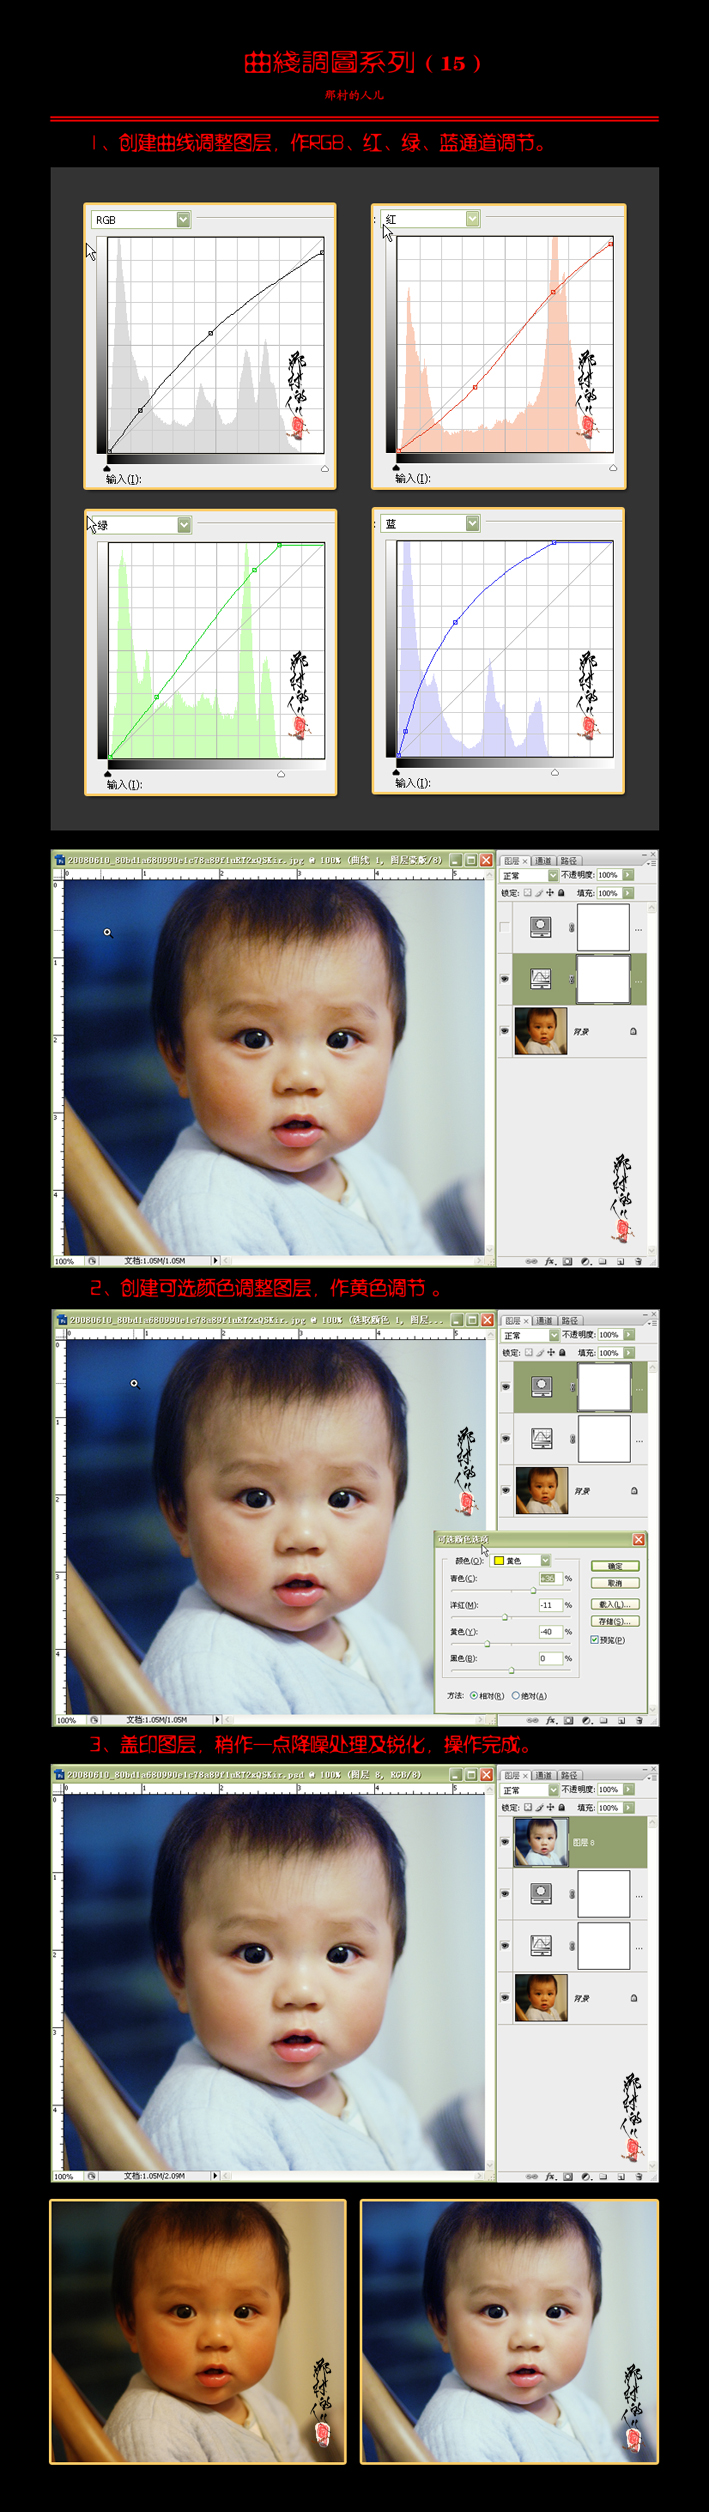 PhotoShop照片处理教程 修复宝宝偏色照片